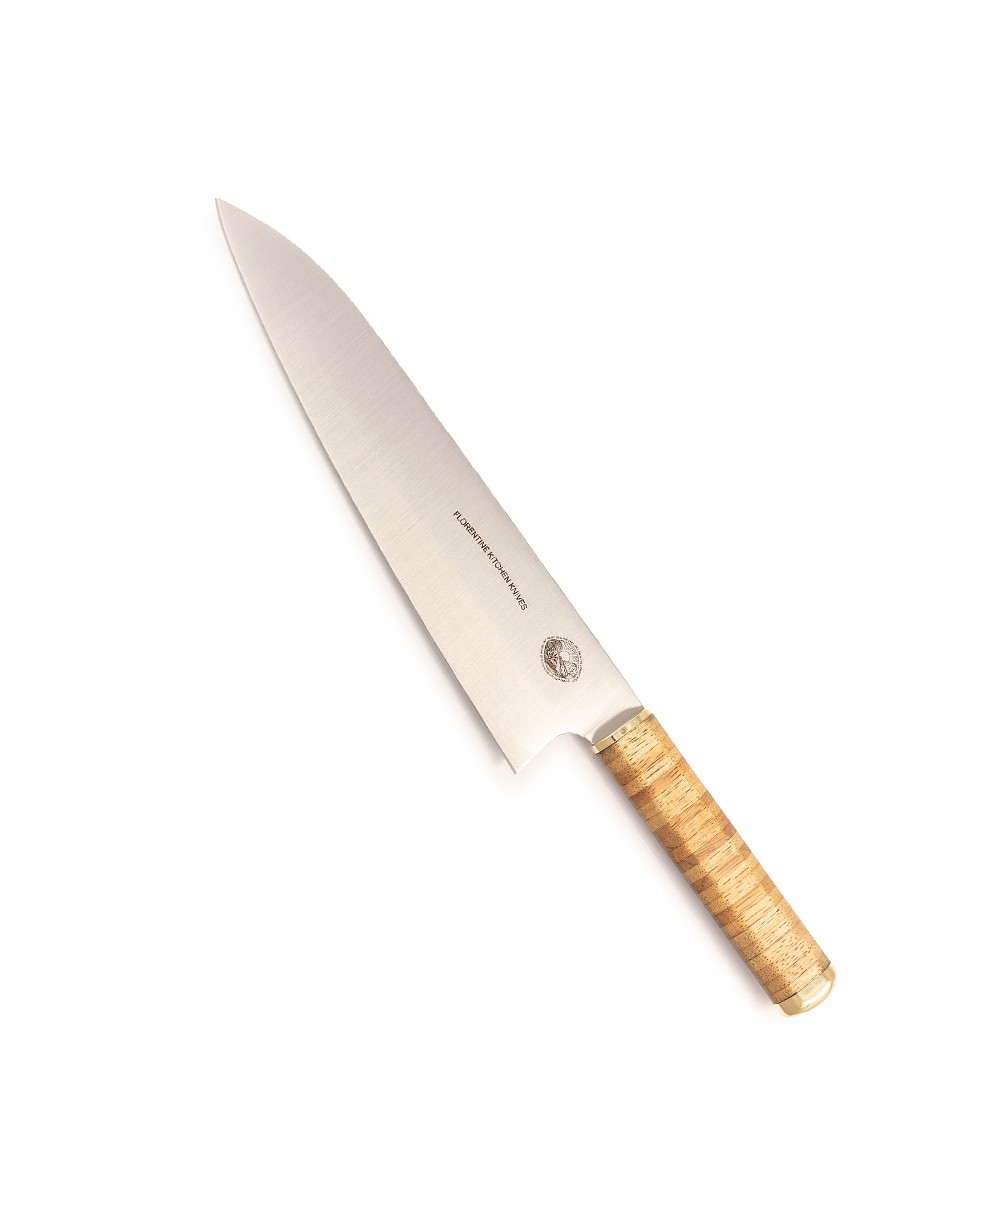 Produktbild des Kedma Gyuto Küchenmesser in wood von Florentine Kitchen Knives im RAUM concept store 